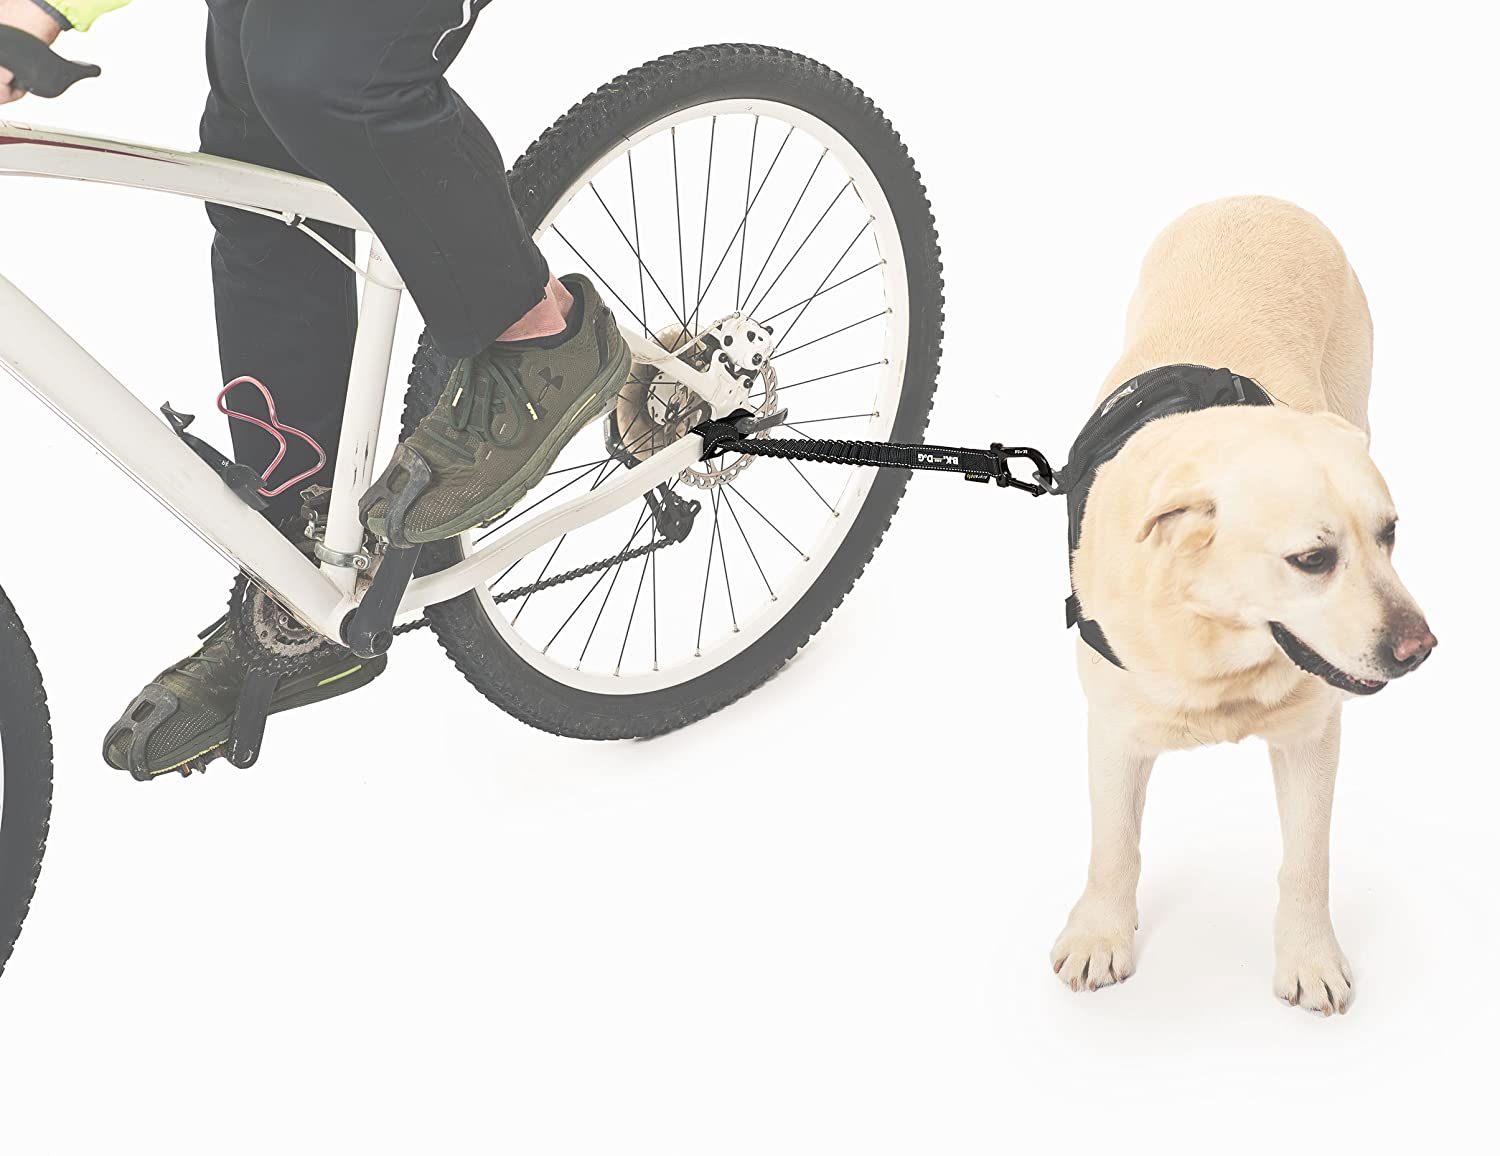  BIKE AND DOG Correa Llevar a uno o más Perros con una Bicicleta. Producto Patentado 